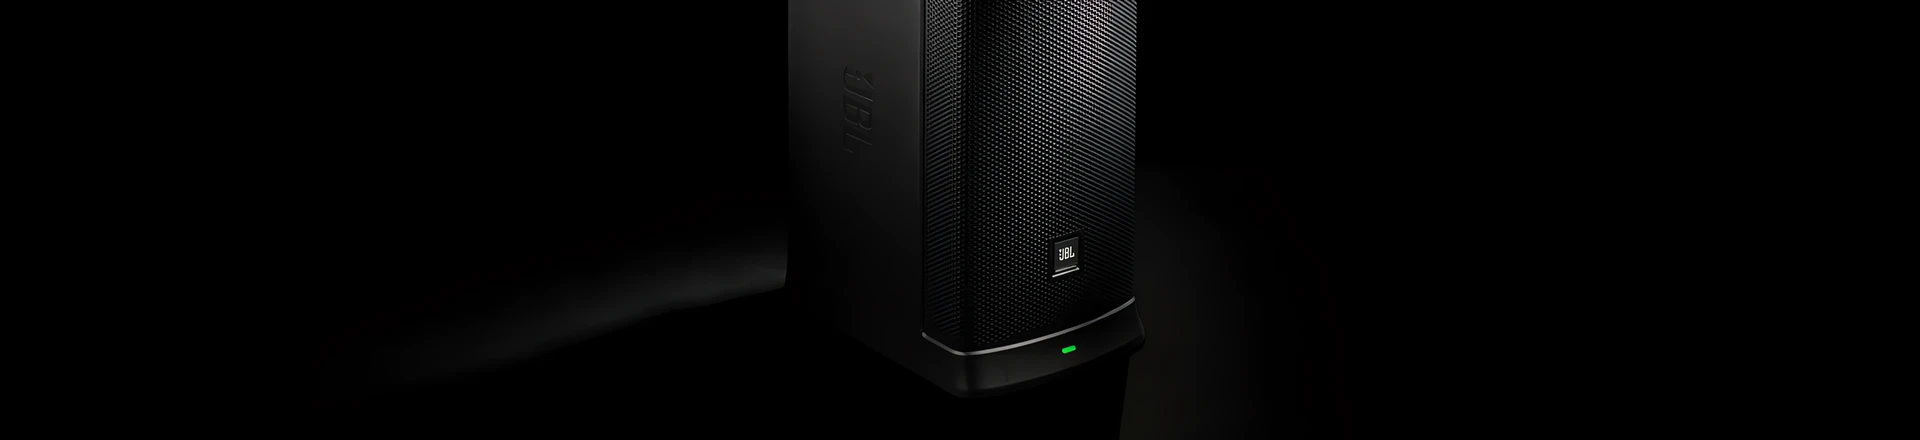 JBL przedstawia nowy system głośnikowy EON ONE MK2